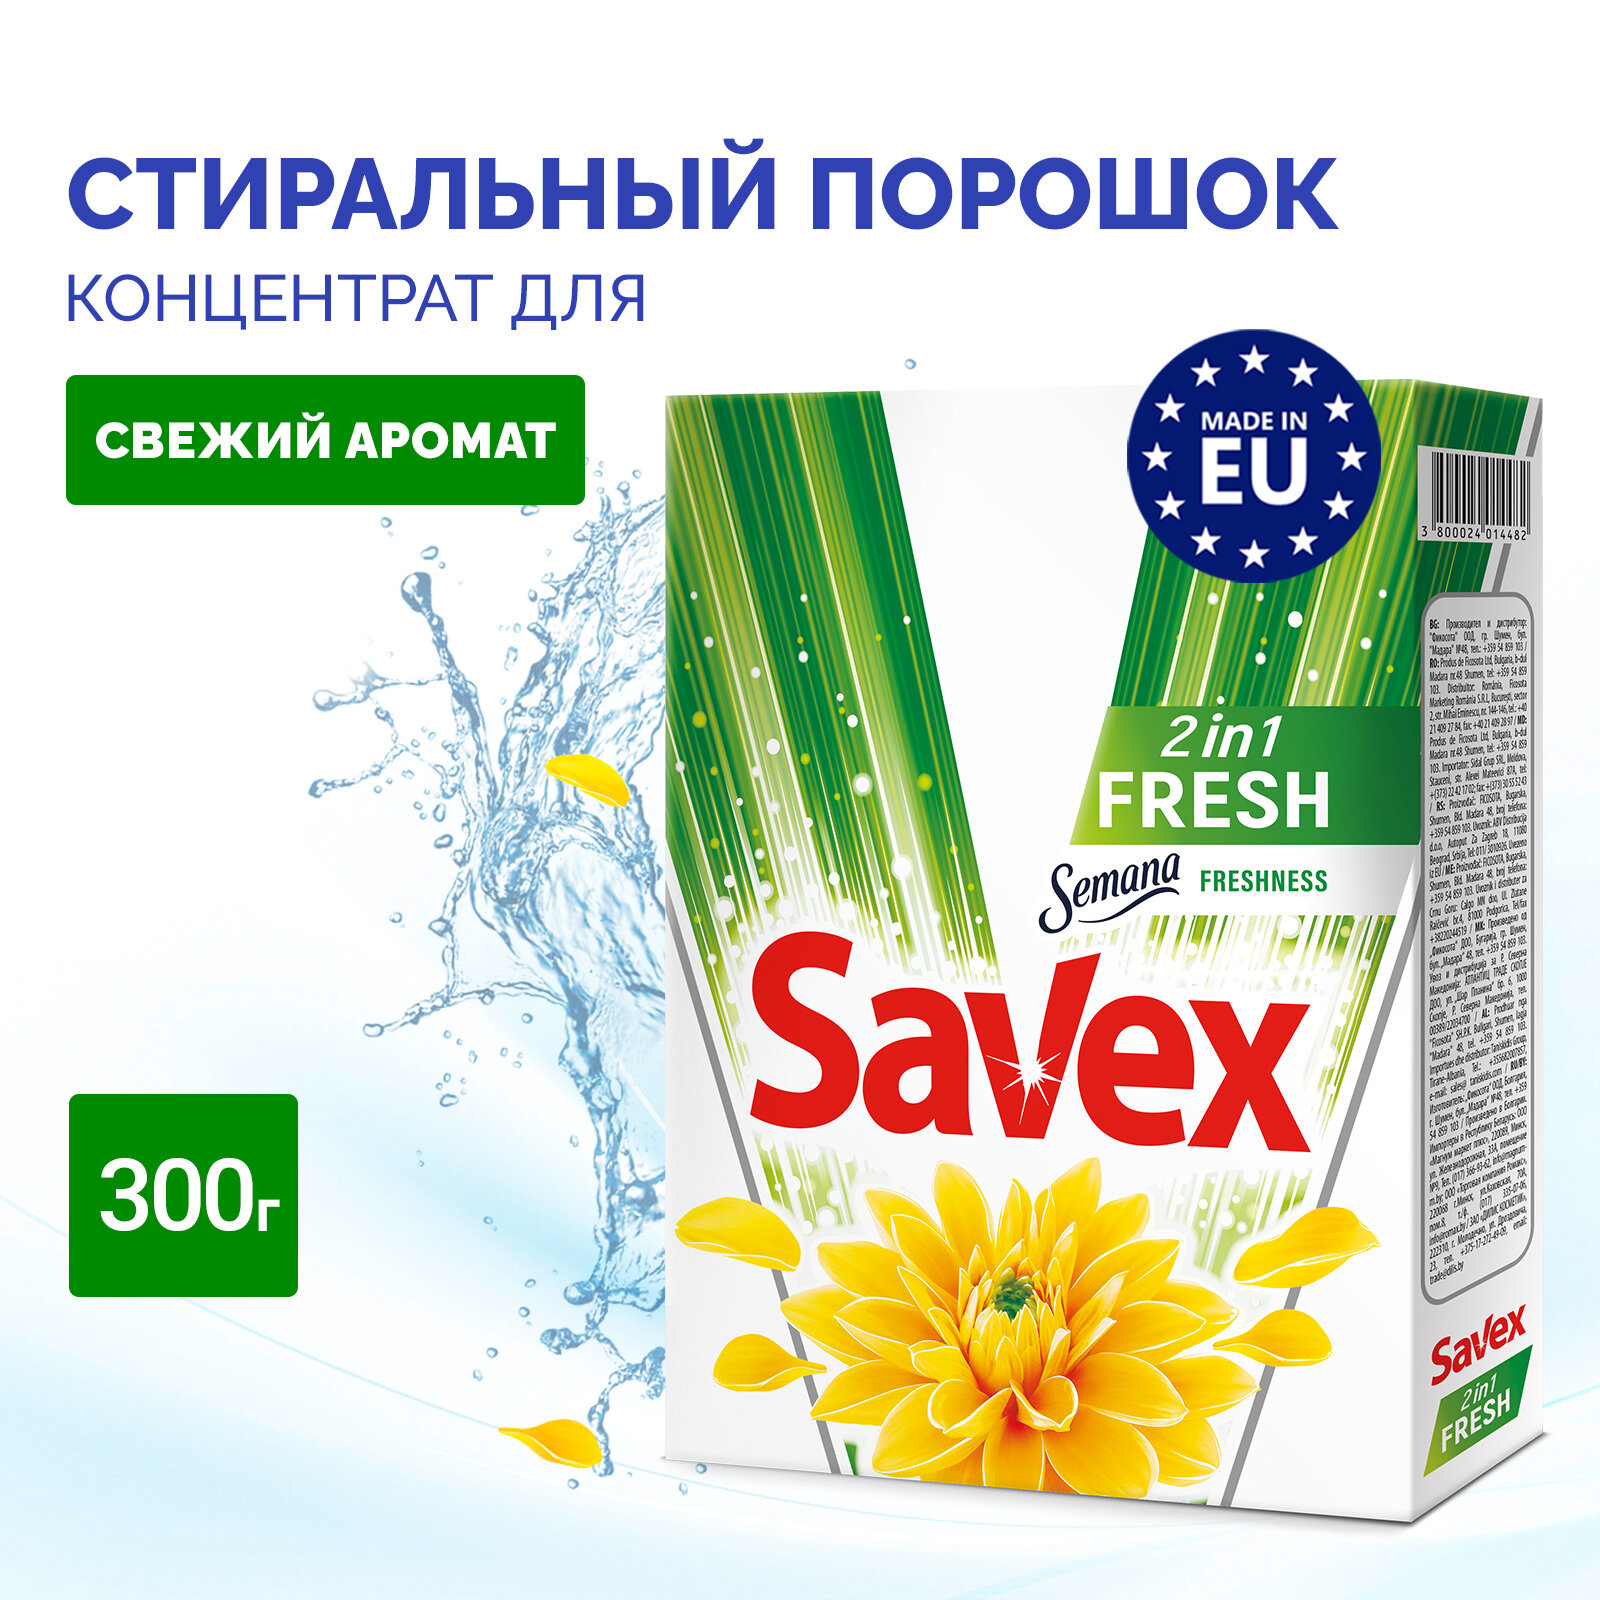 Порошок стиральный автомат Savex 2в1 Fresh для белья универсальный концентрат, 300г